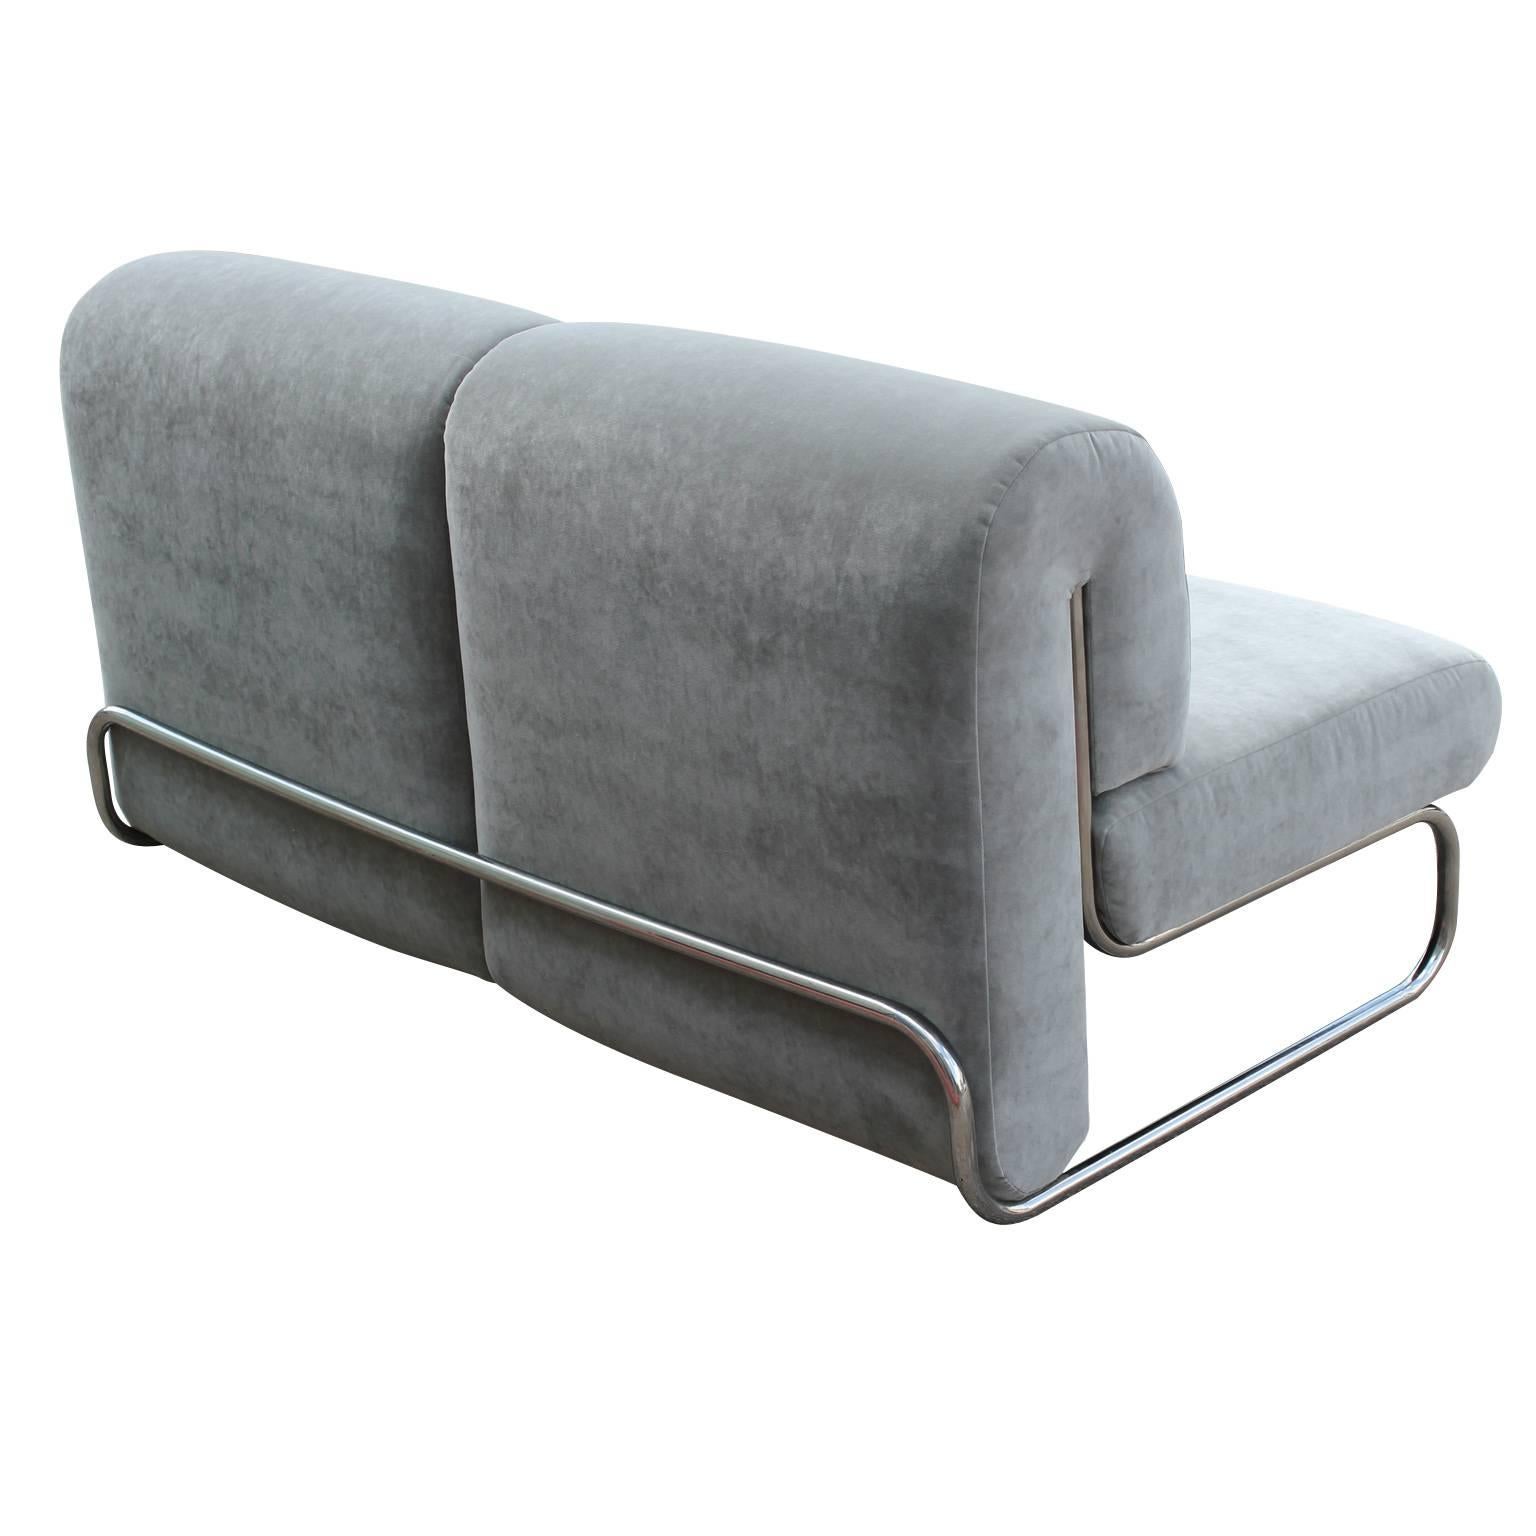 1970s Italian Modern Loveset Sofa in Soft Grey Velvet with Tubular Chrome 1